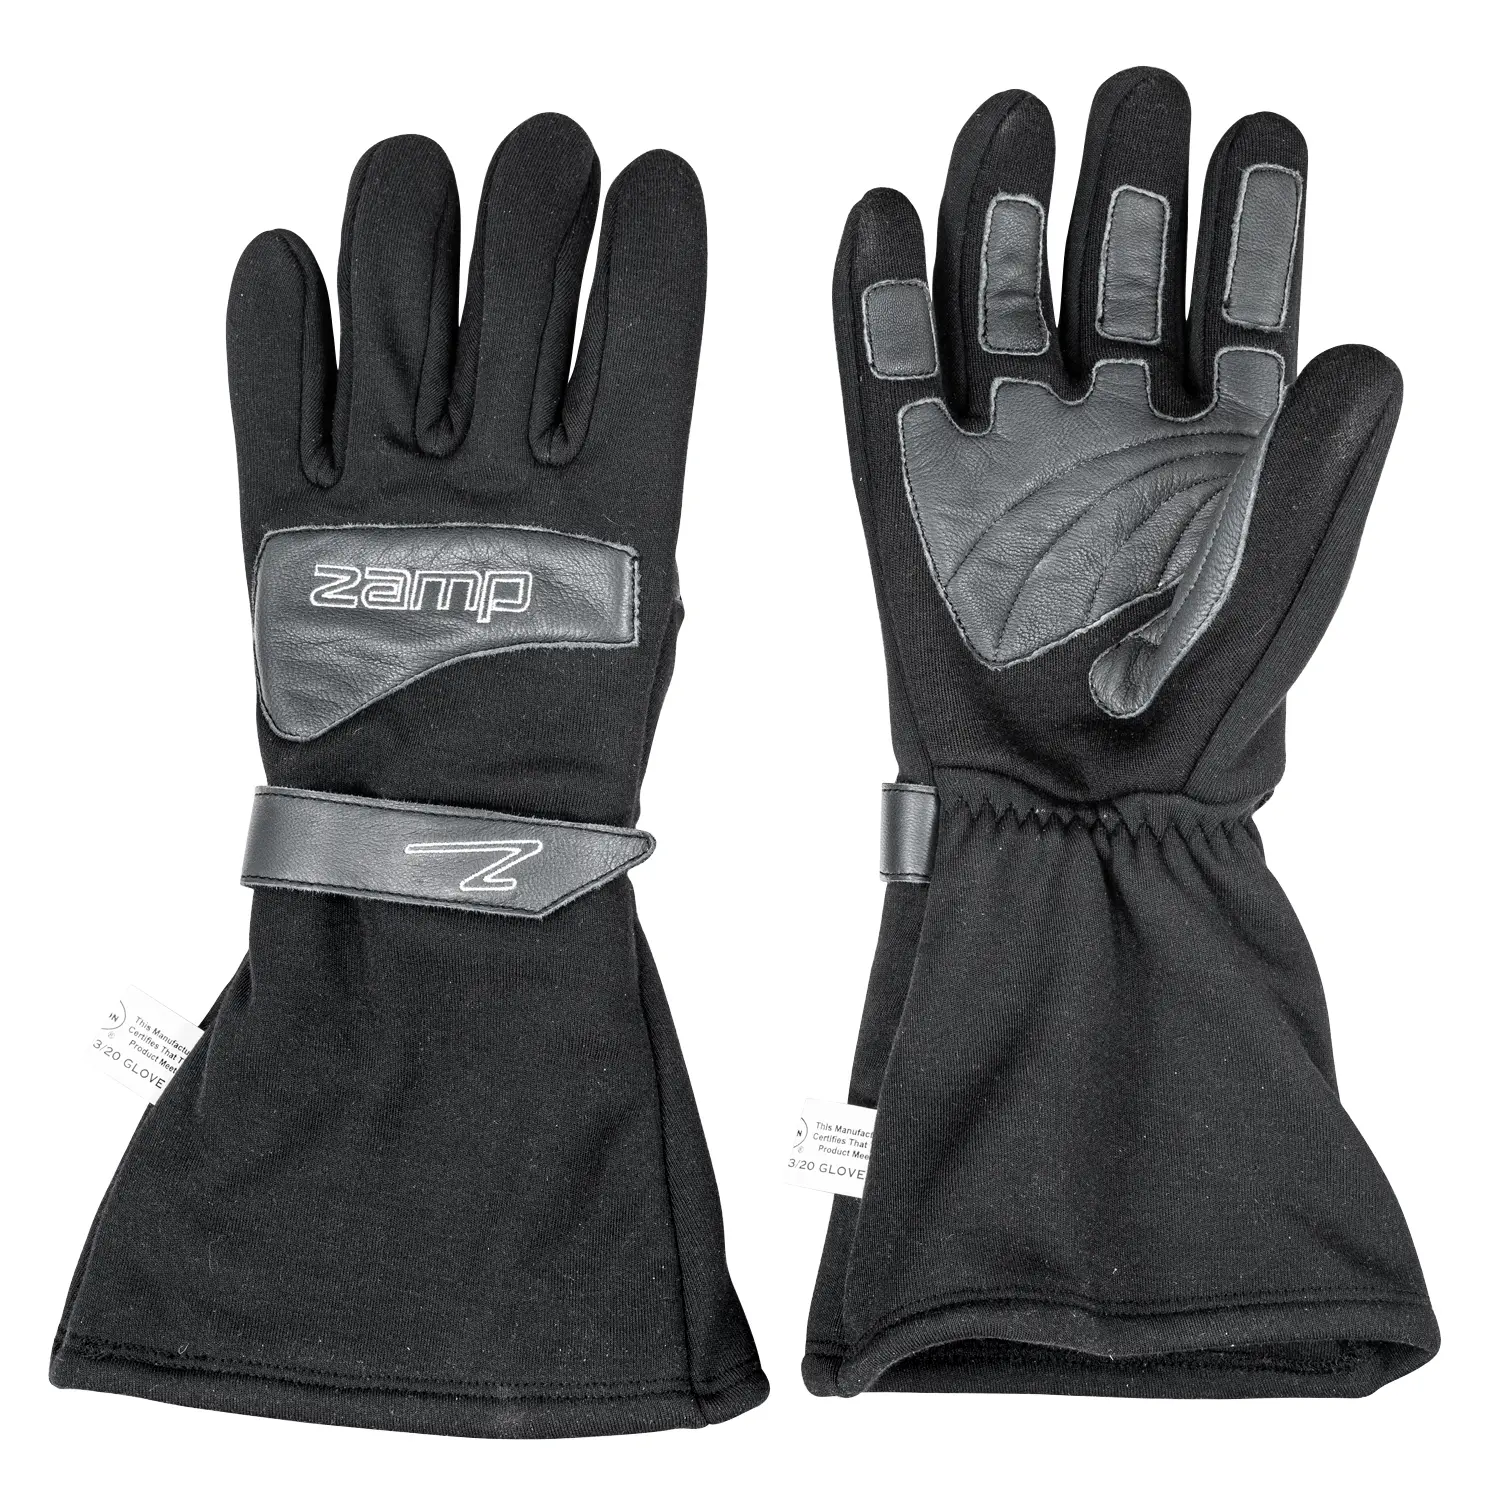 ZR-Drag Gloves